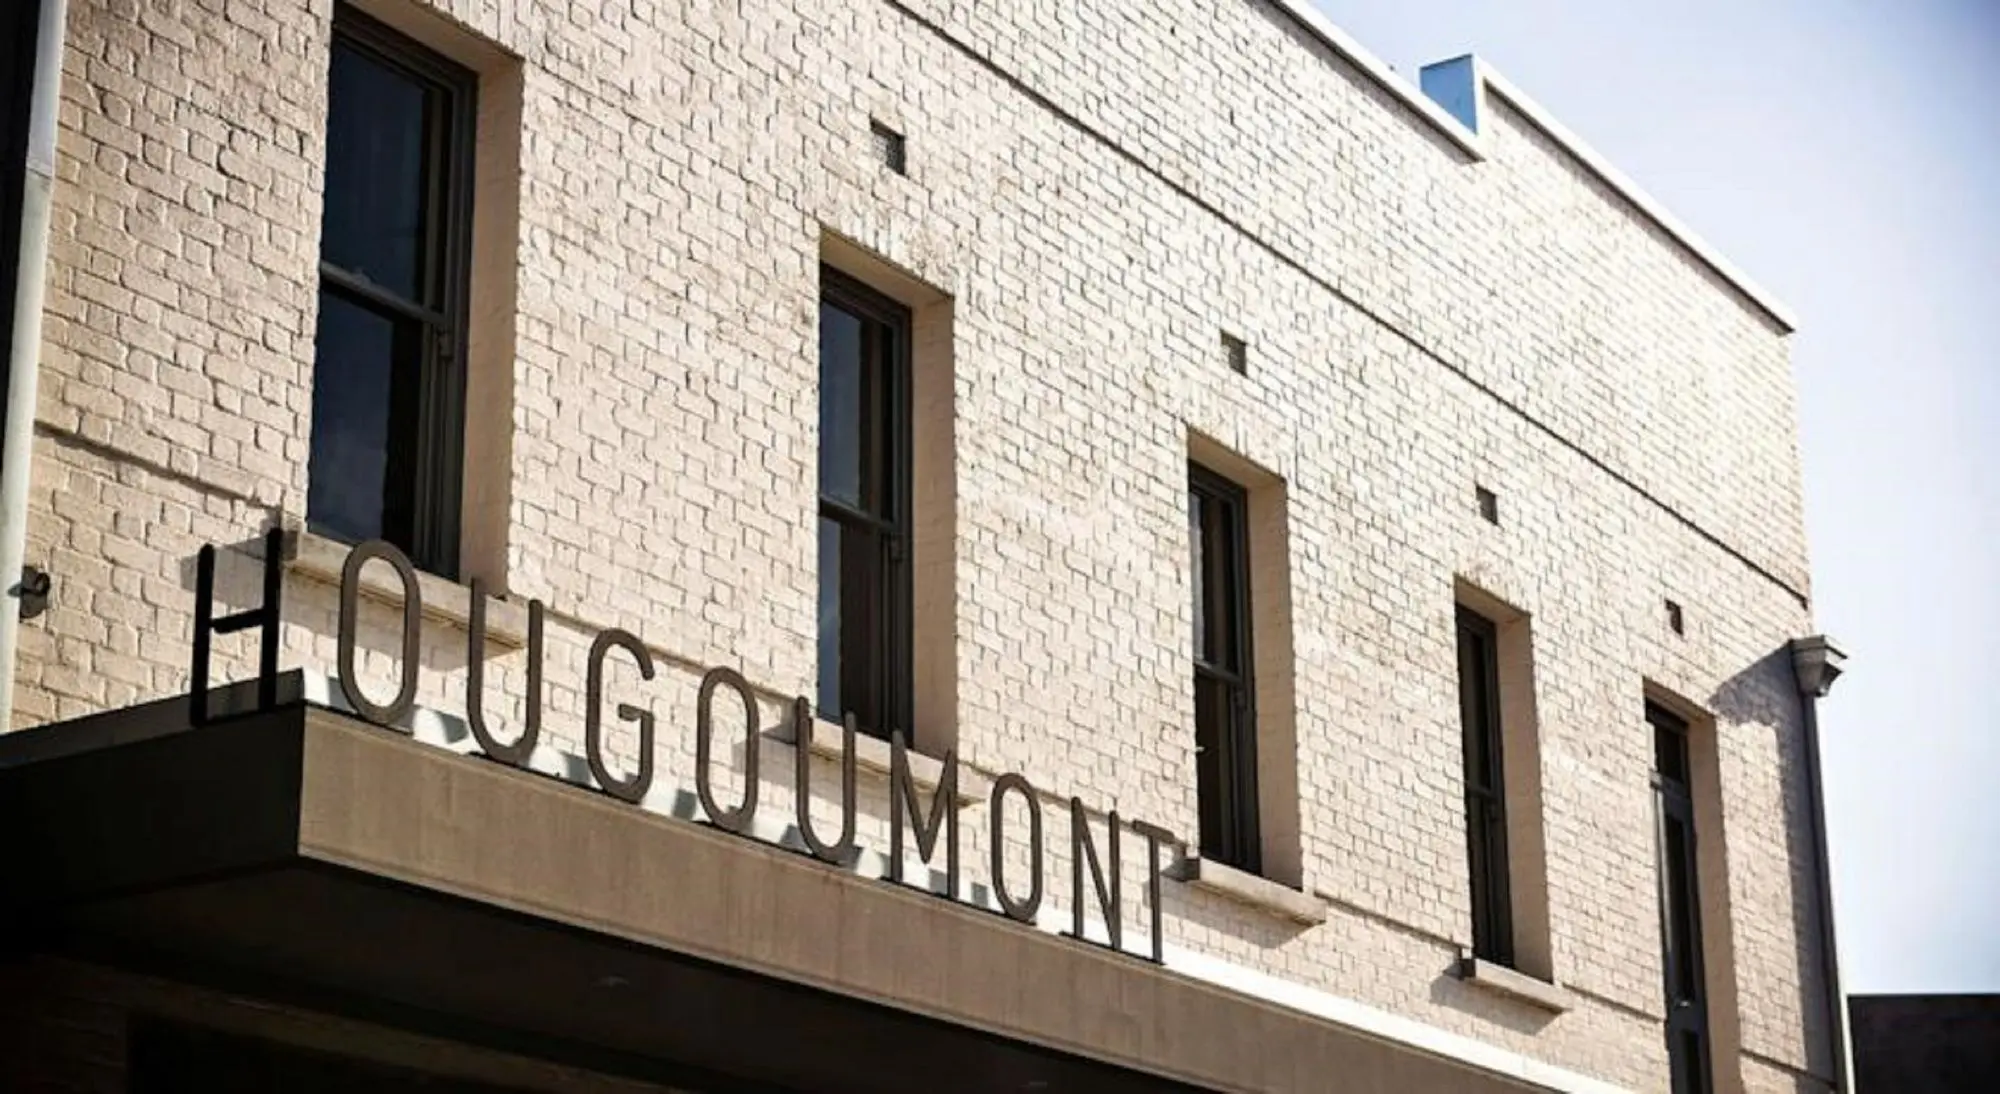 Hougoumont Hotel